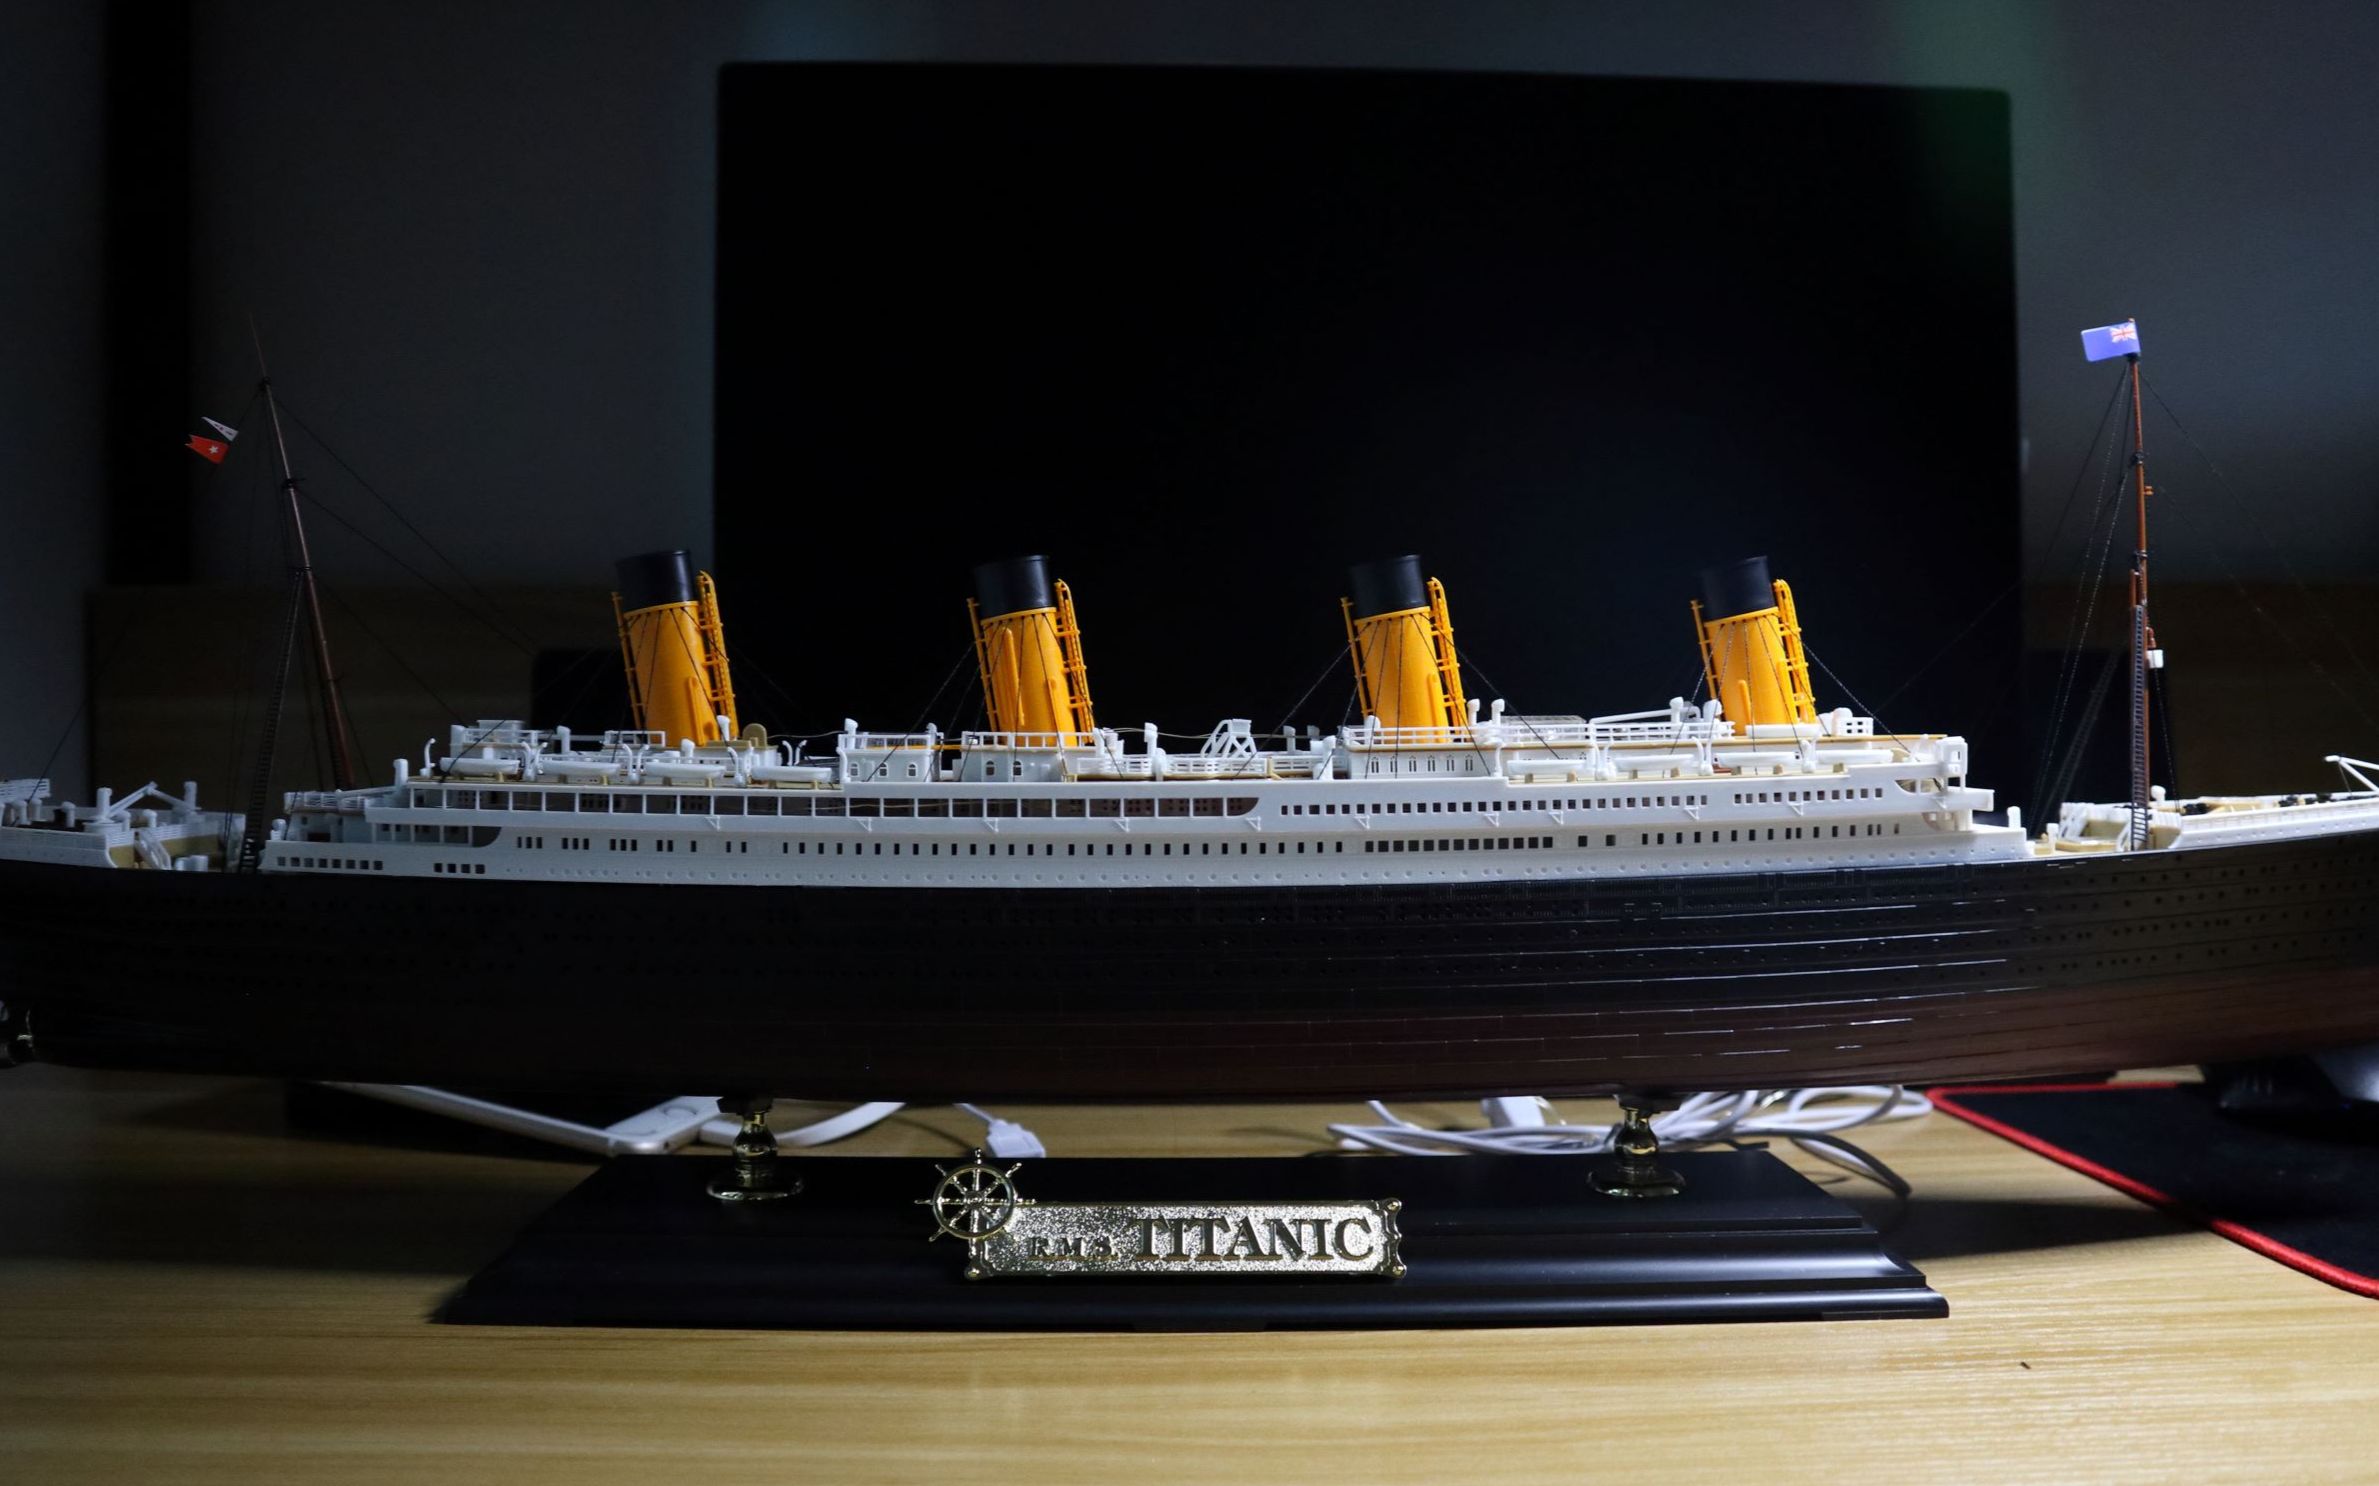 泰坦尼克号模型 最大图片